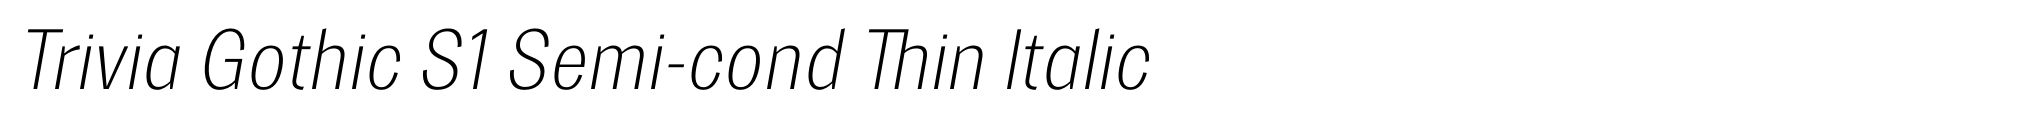 Trivia Gothic S1 Semi-cond Thin Italic image